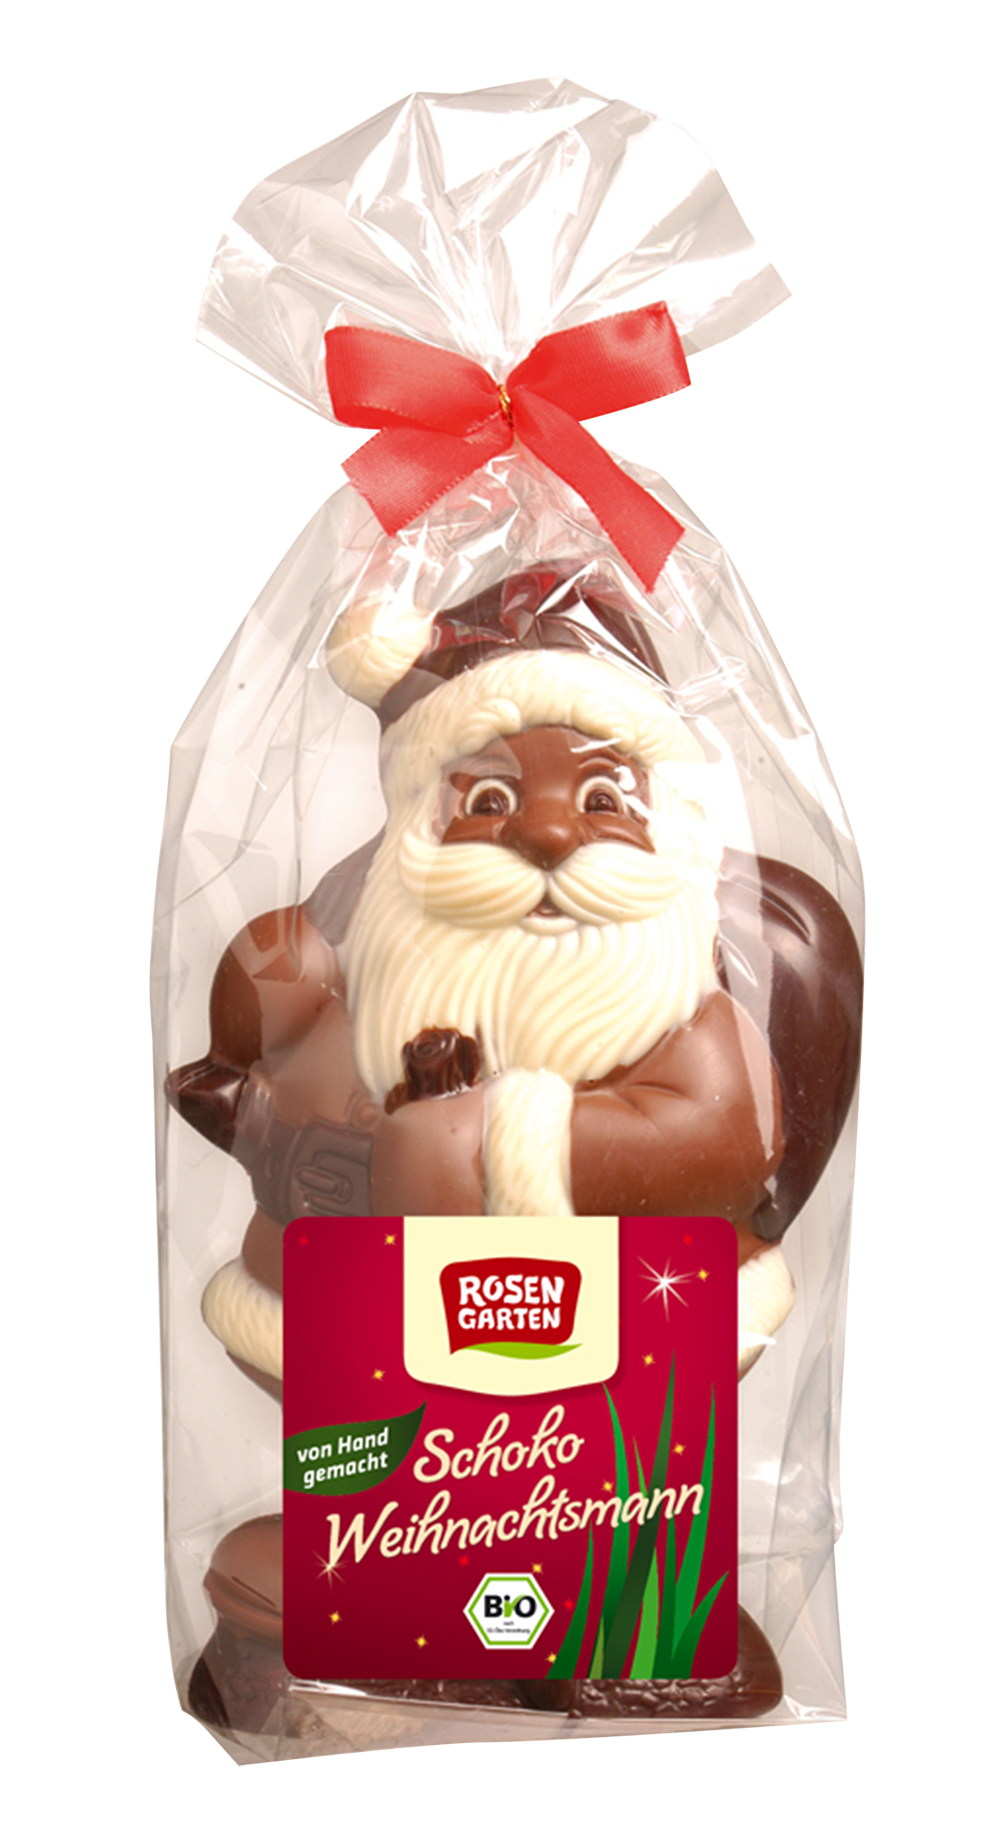 Rosengarten Vollmilch-Weihnachtsmann BIG mit weißer Schokolade geschminkt 200g/W